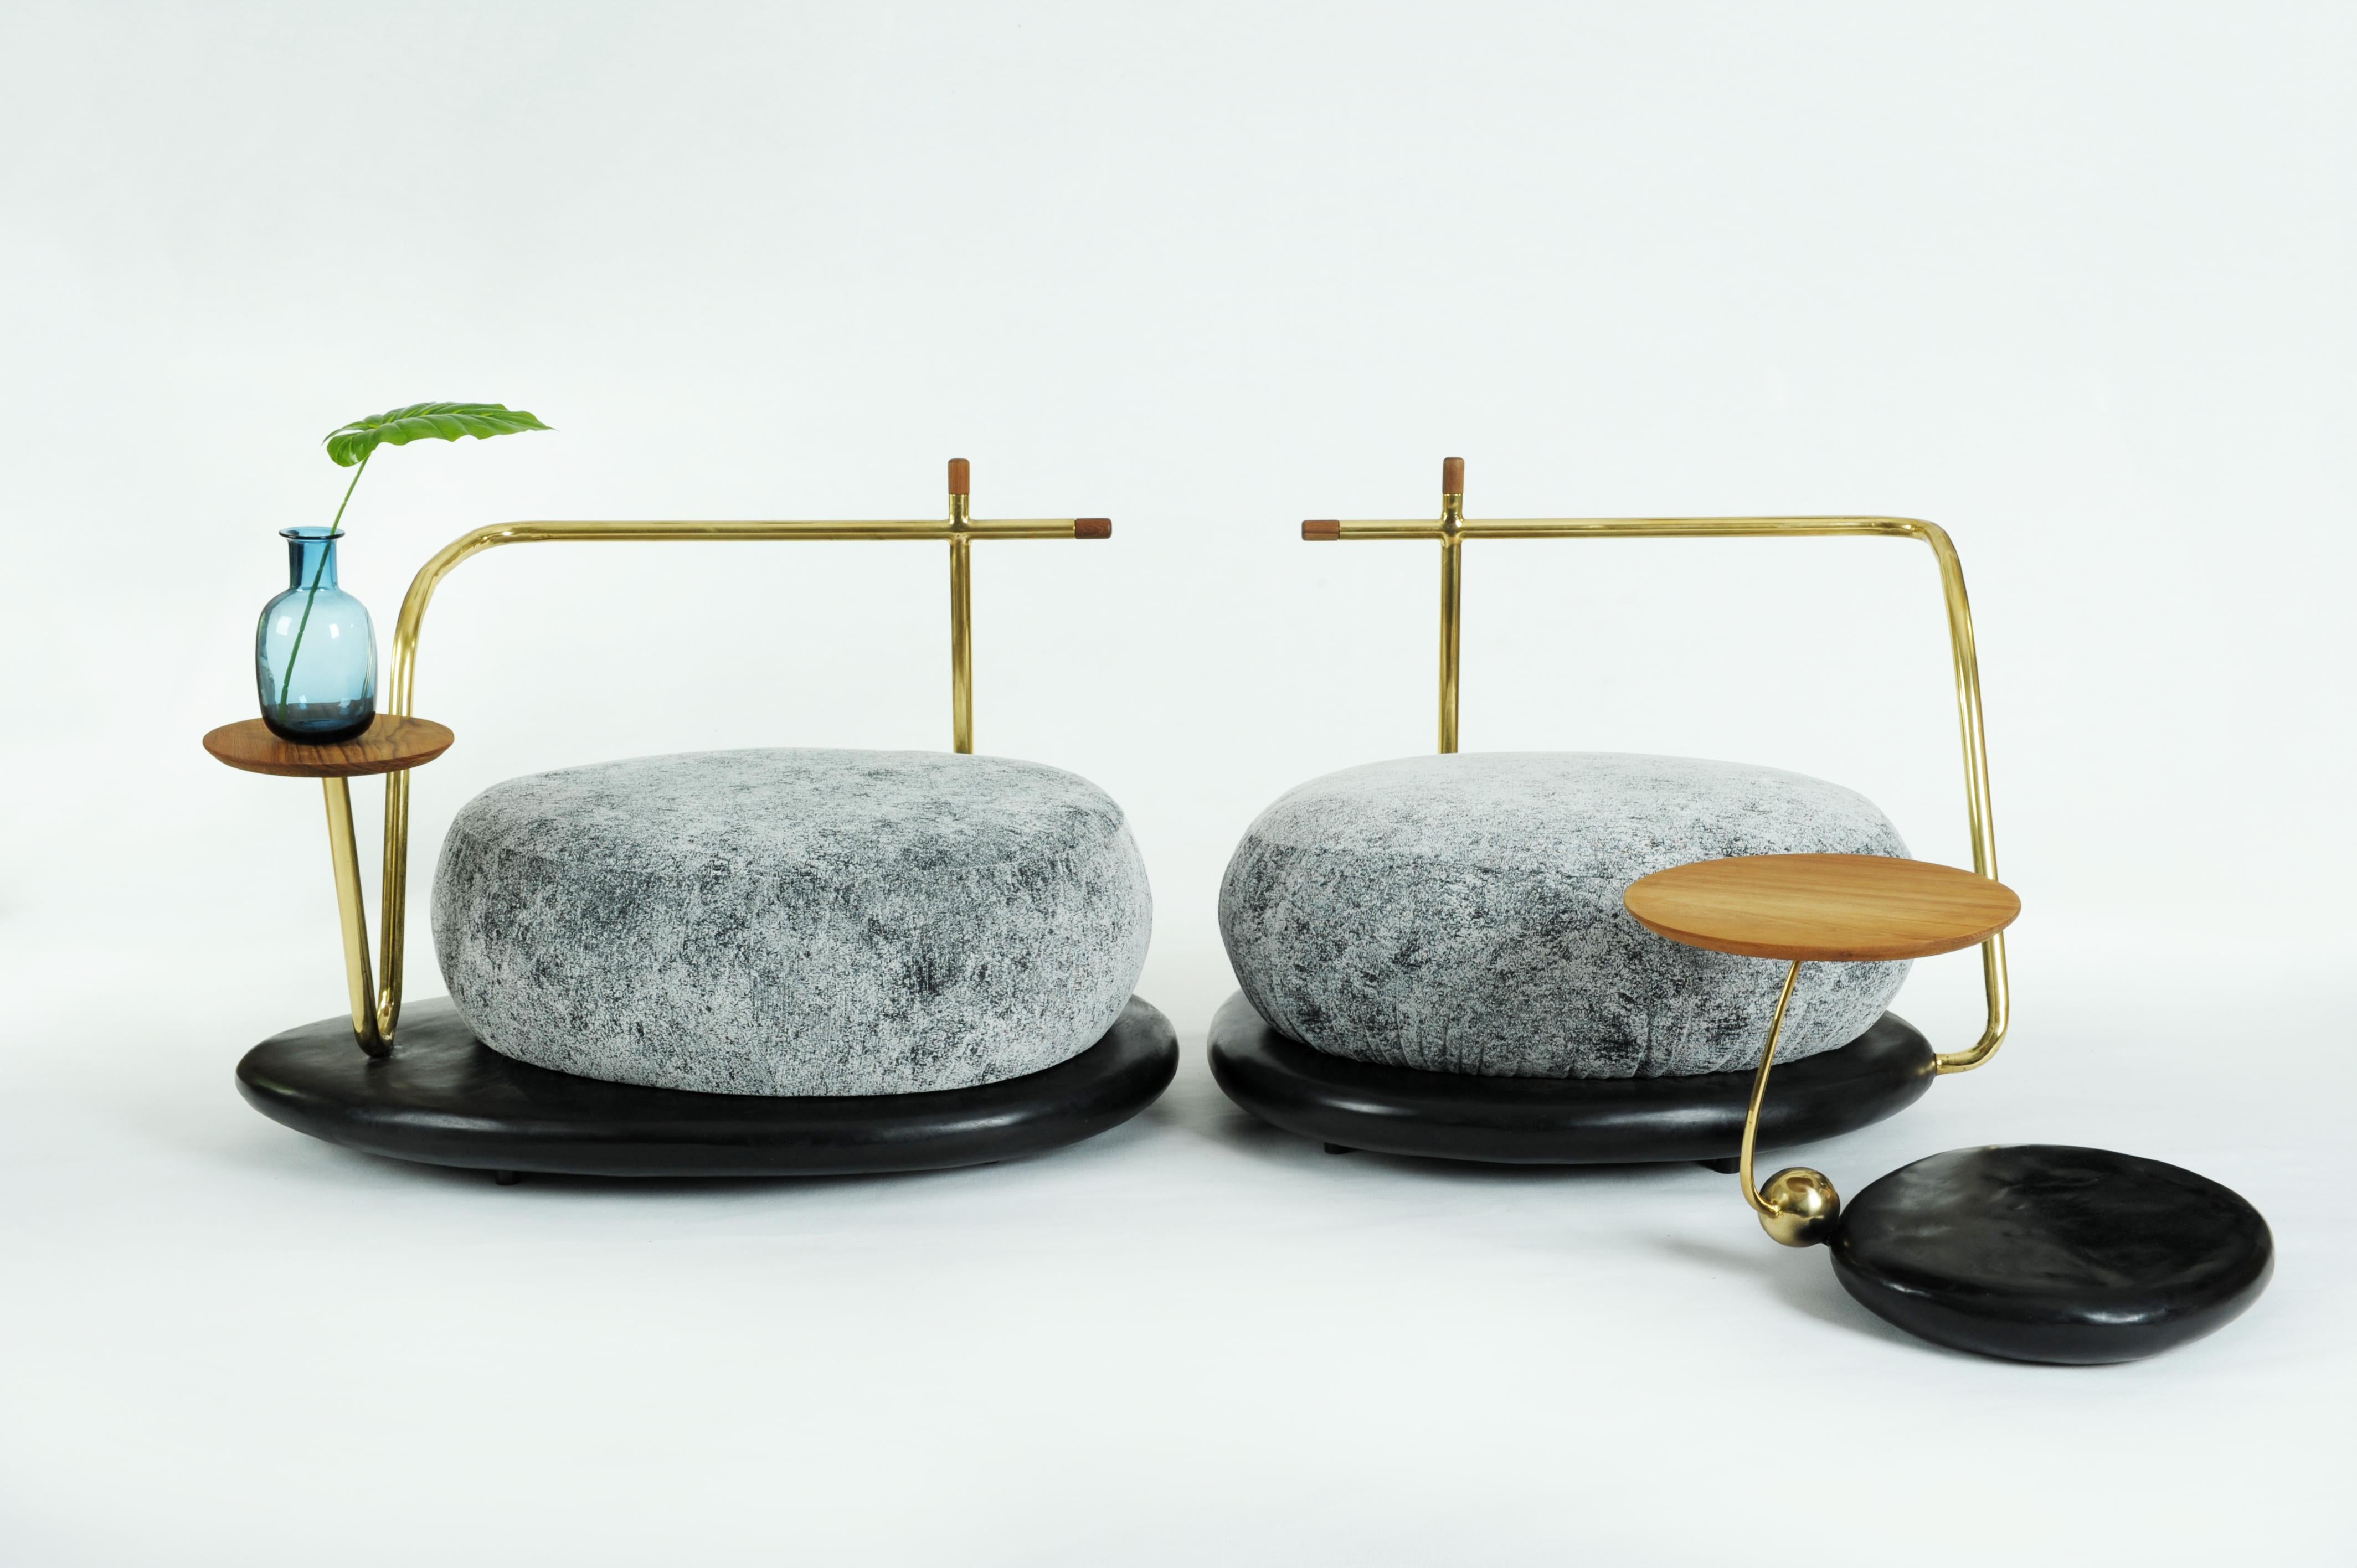 Zen Pouffe - Misaya
Hand-sculpted Pouffe
Materials: Brass, teak, wood.
Dimensions:
A. 106 x 68 x 72 cm
B. 90 x 72 x 72 cm.
 